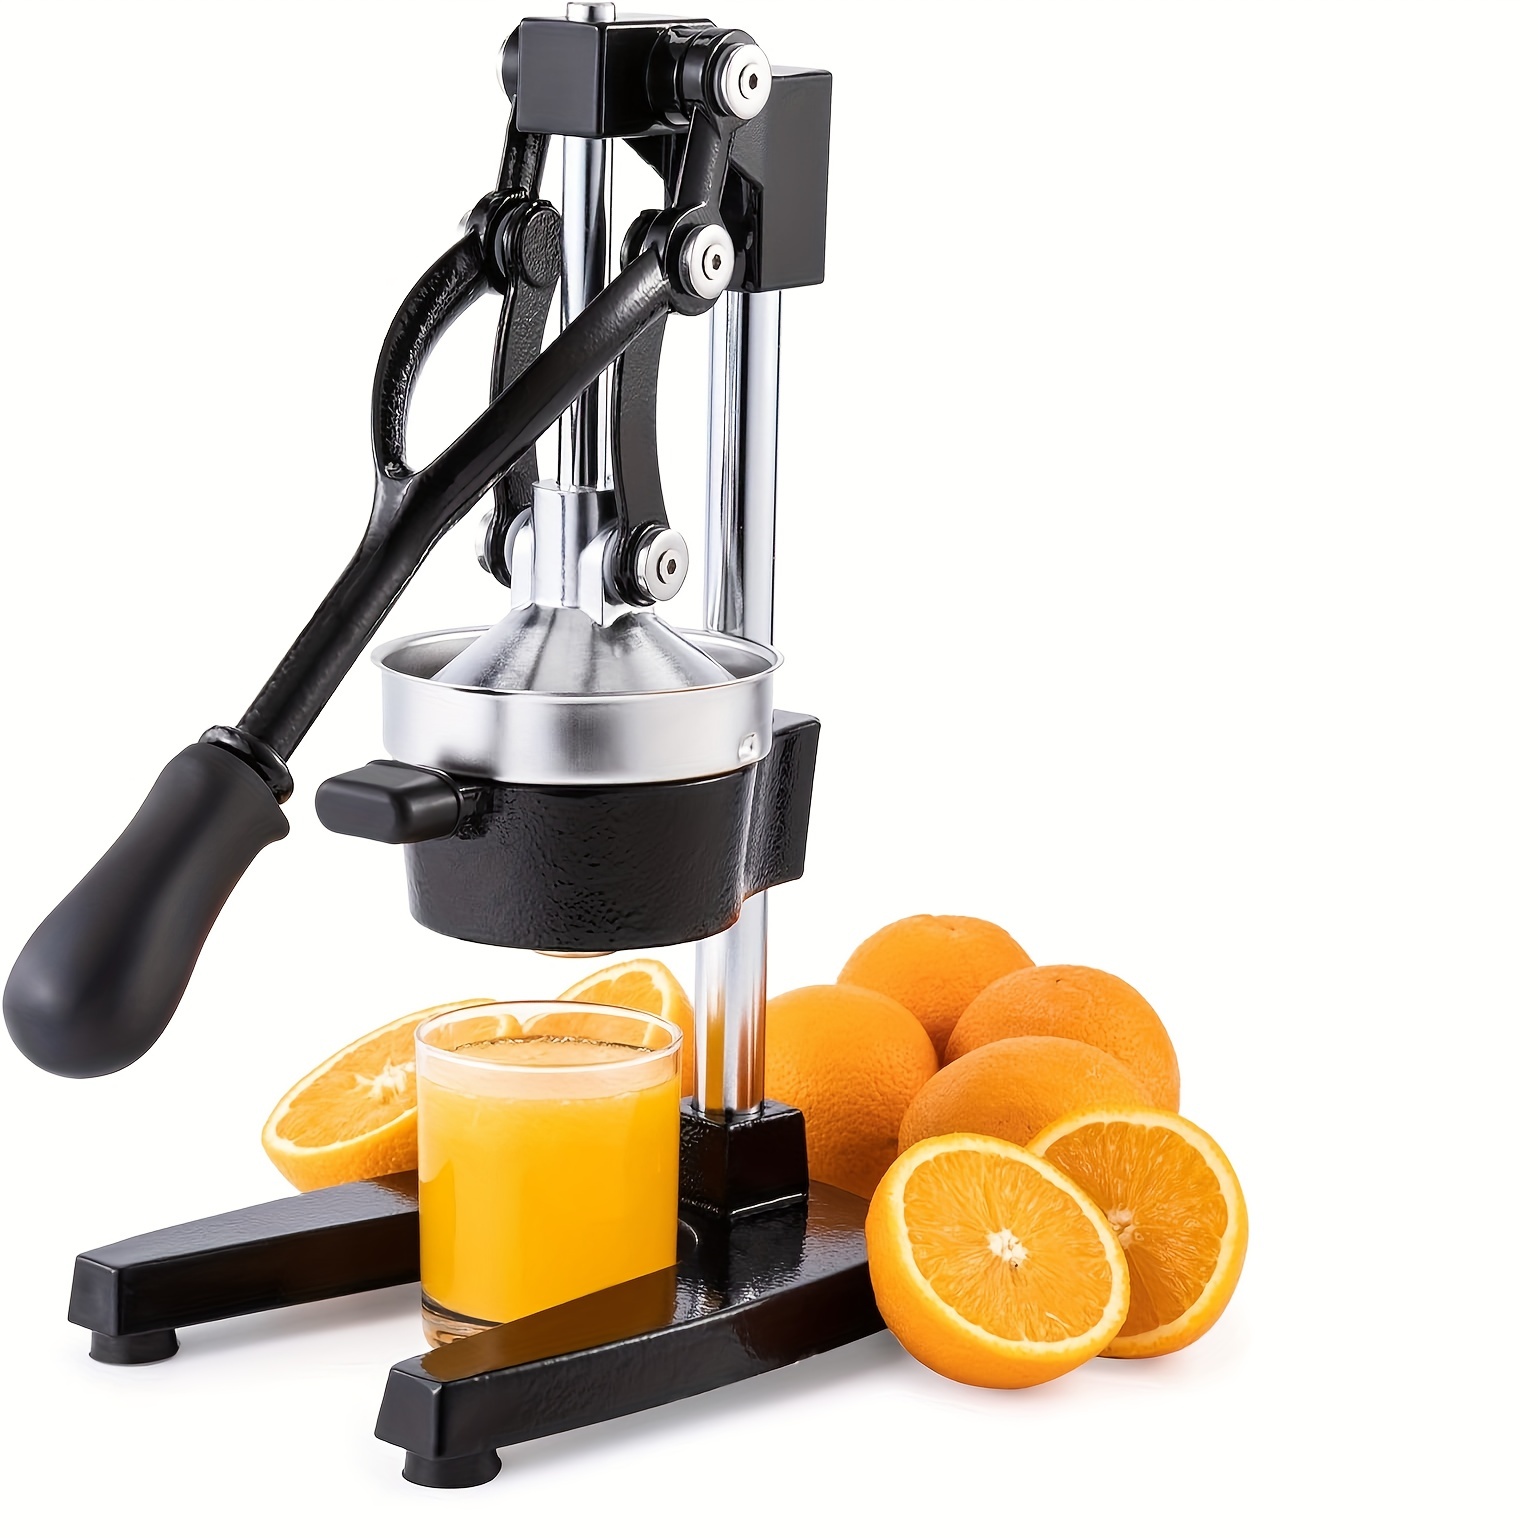 Exprimidor naranjas - Exprimidor de naranjas manual, profesional